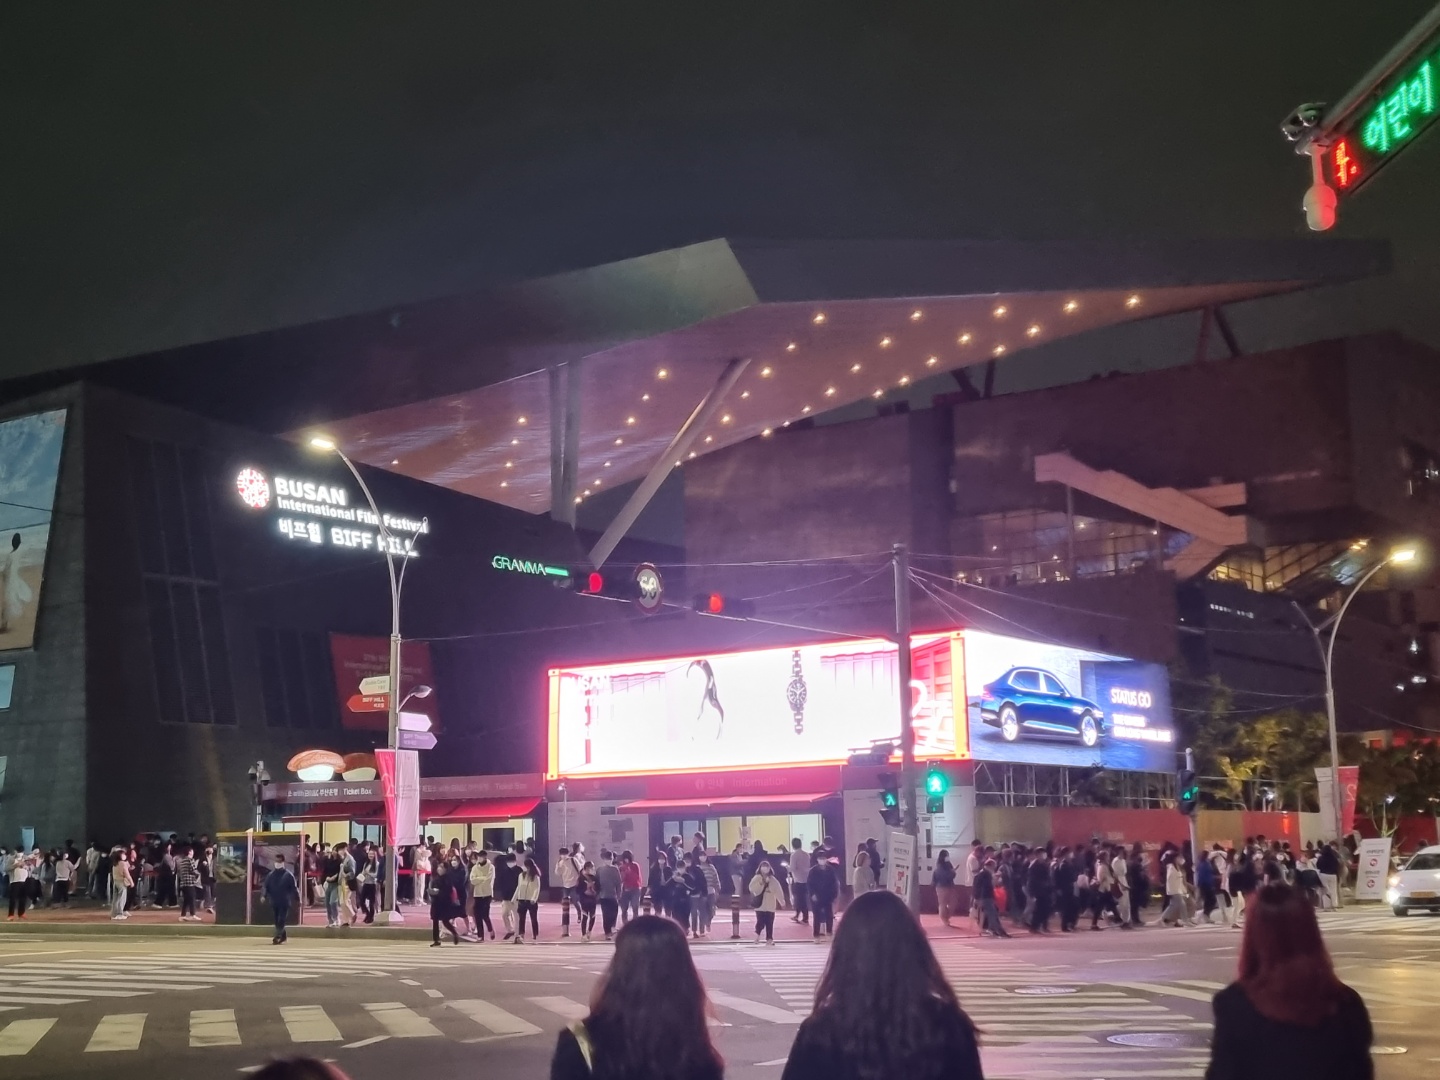 9일 저녁 찍은 부산 영화의전당 앞 풍경. 현장 예매소 앞에 길게 줄이 늘어서 있다.